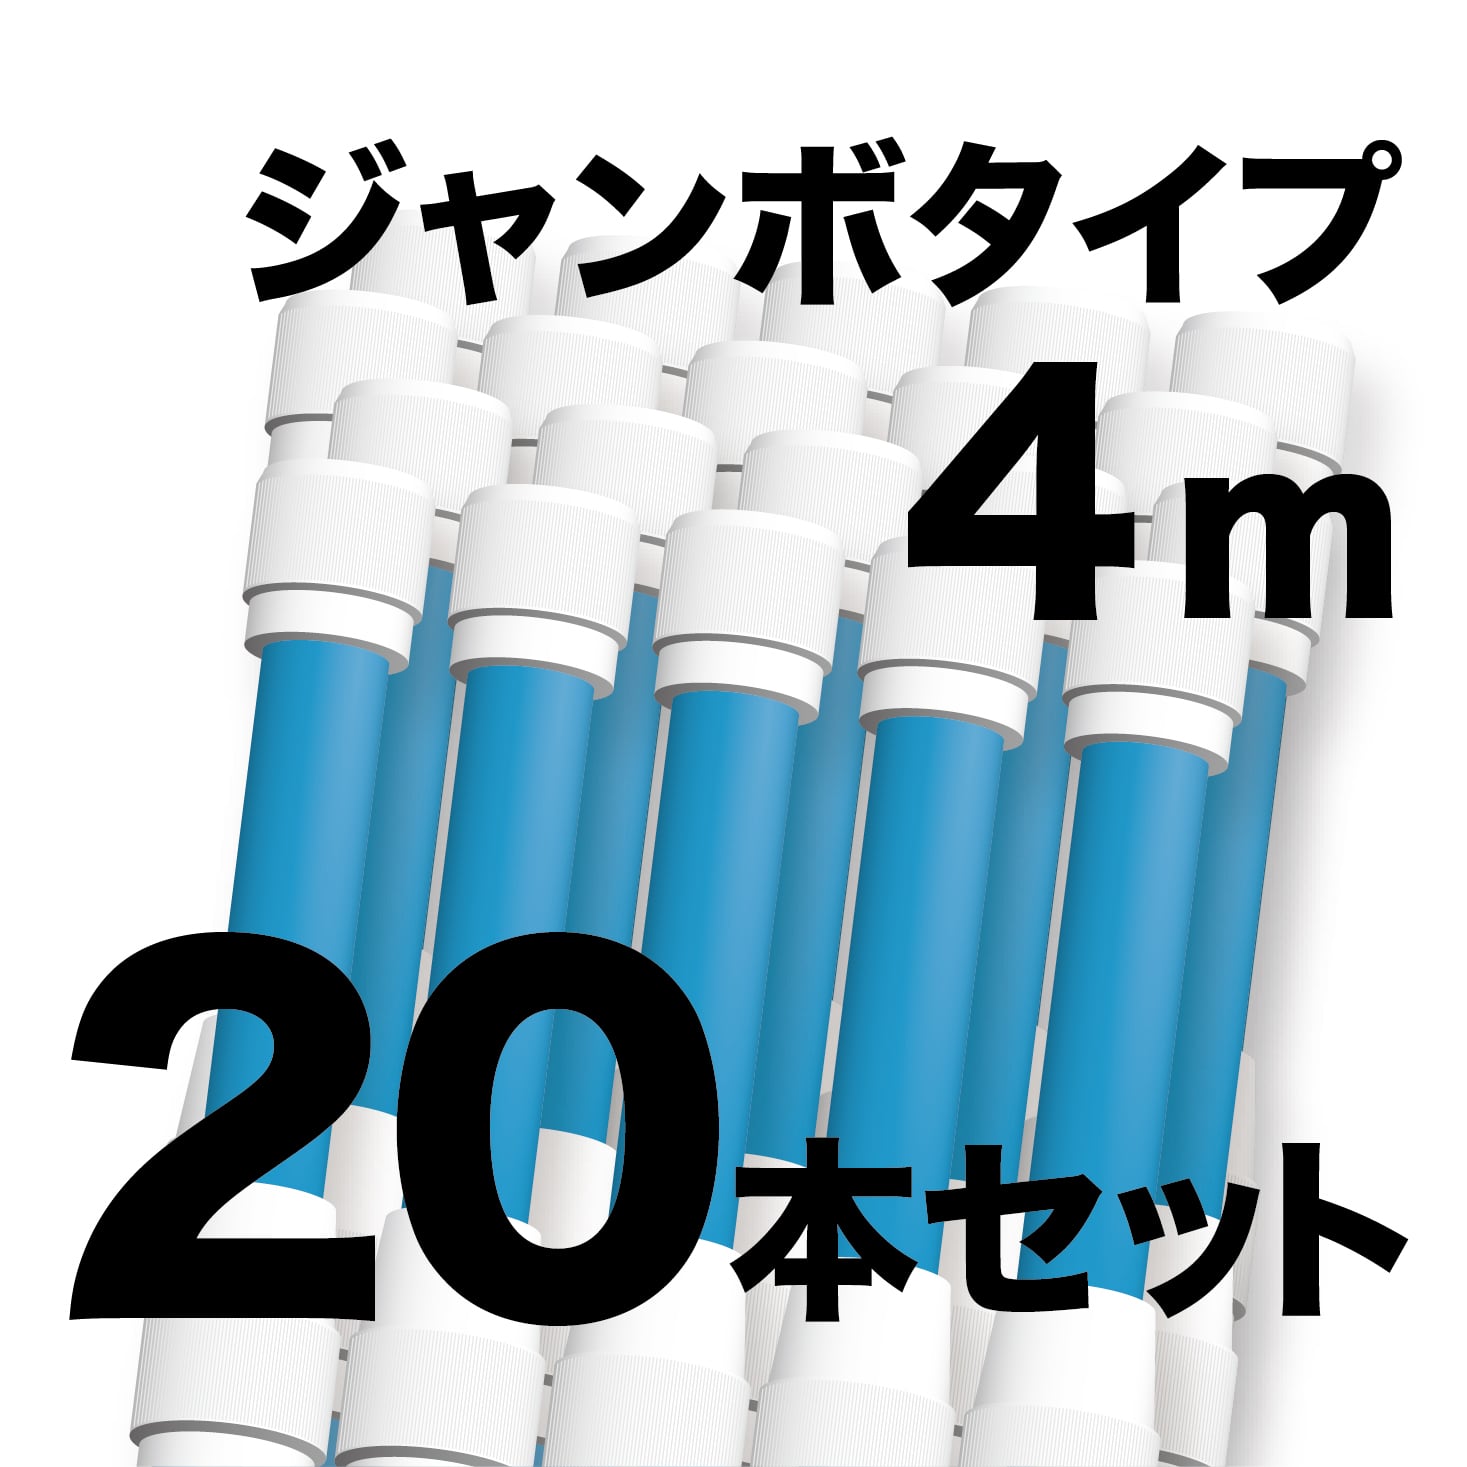 ジャンボ のぼりポール 4m 青色 20本セット SMK-PB4M20 日本製 店舗販促用の資材に最適 NOBORI the Shop